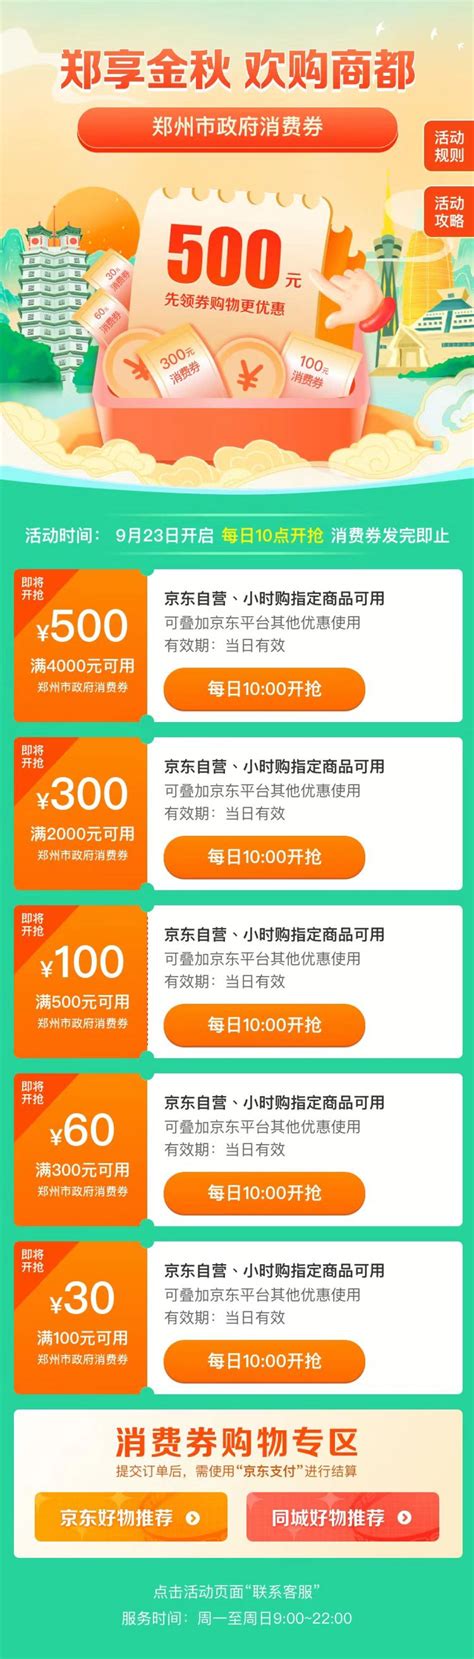 郑州电商网站制作服务收费